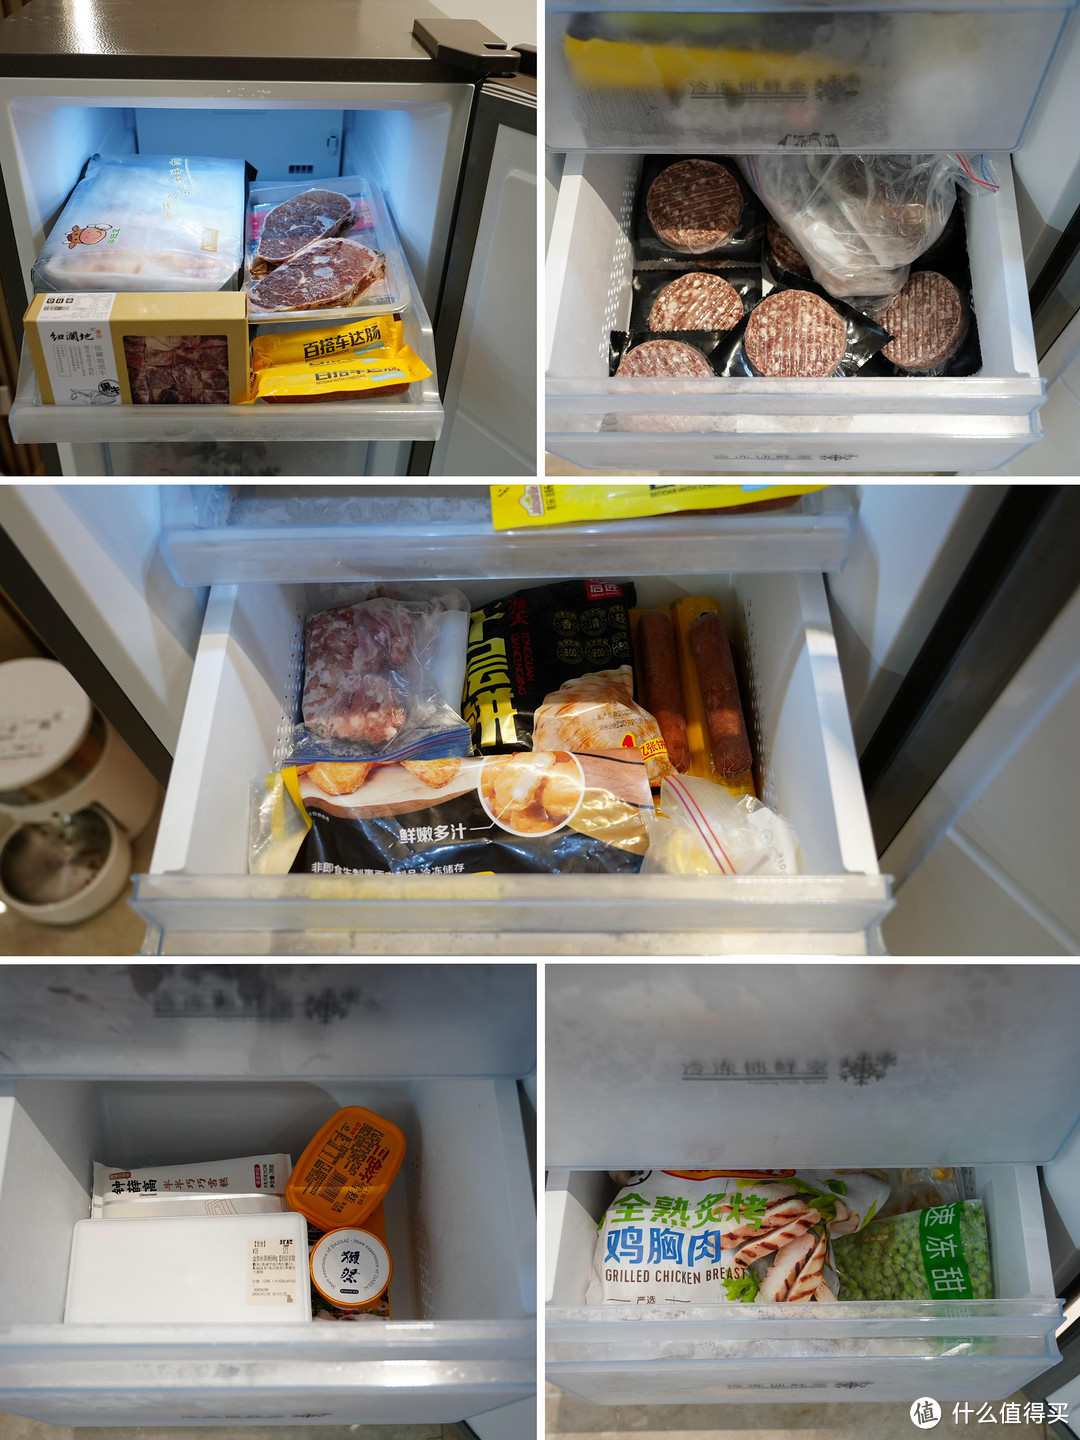 家中食物储存需求无法满足的烦恼谁懂啊?我家冰箱+立式冰柜的组合值得借鉴